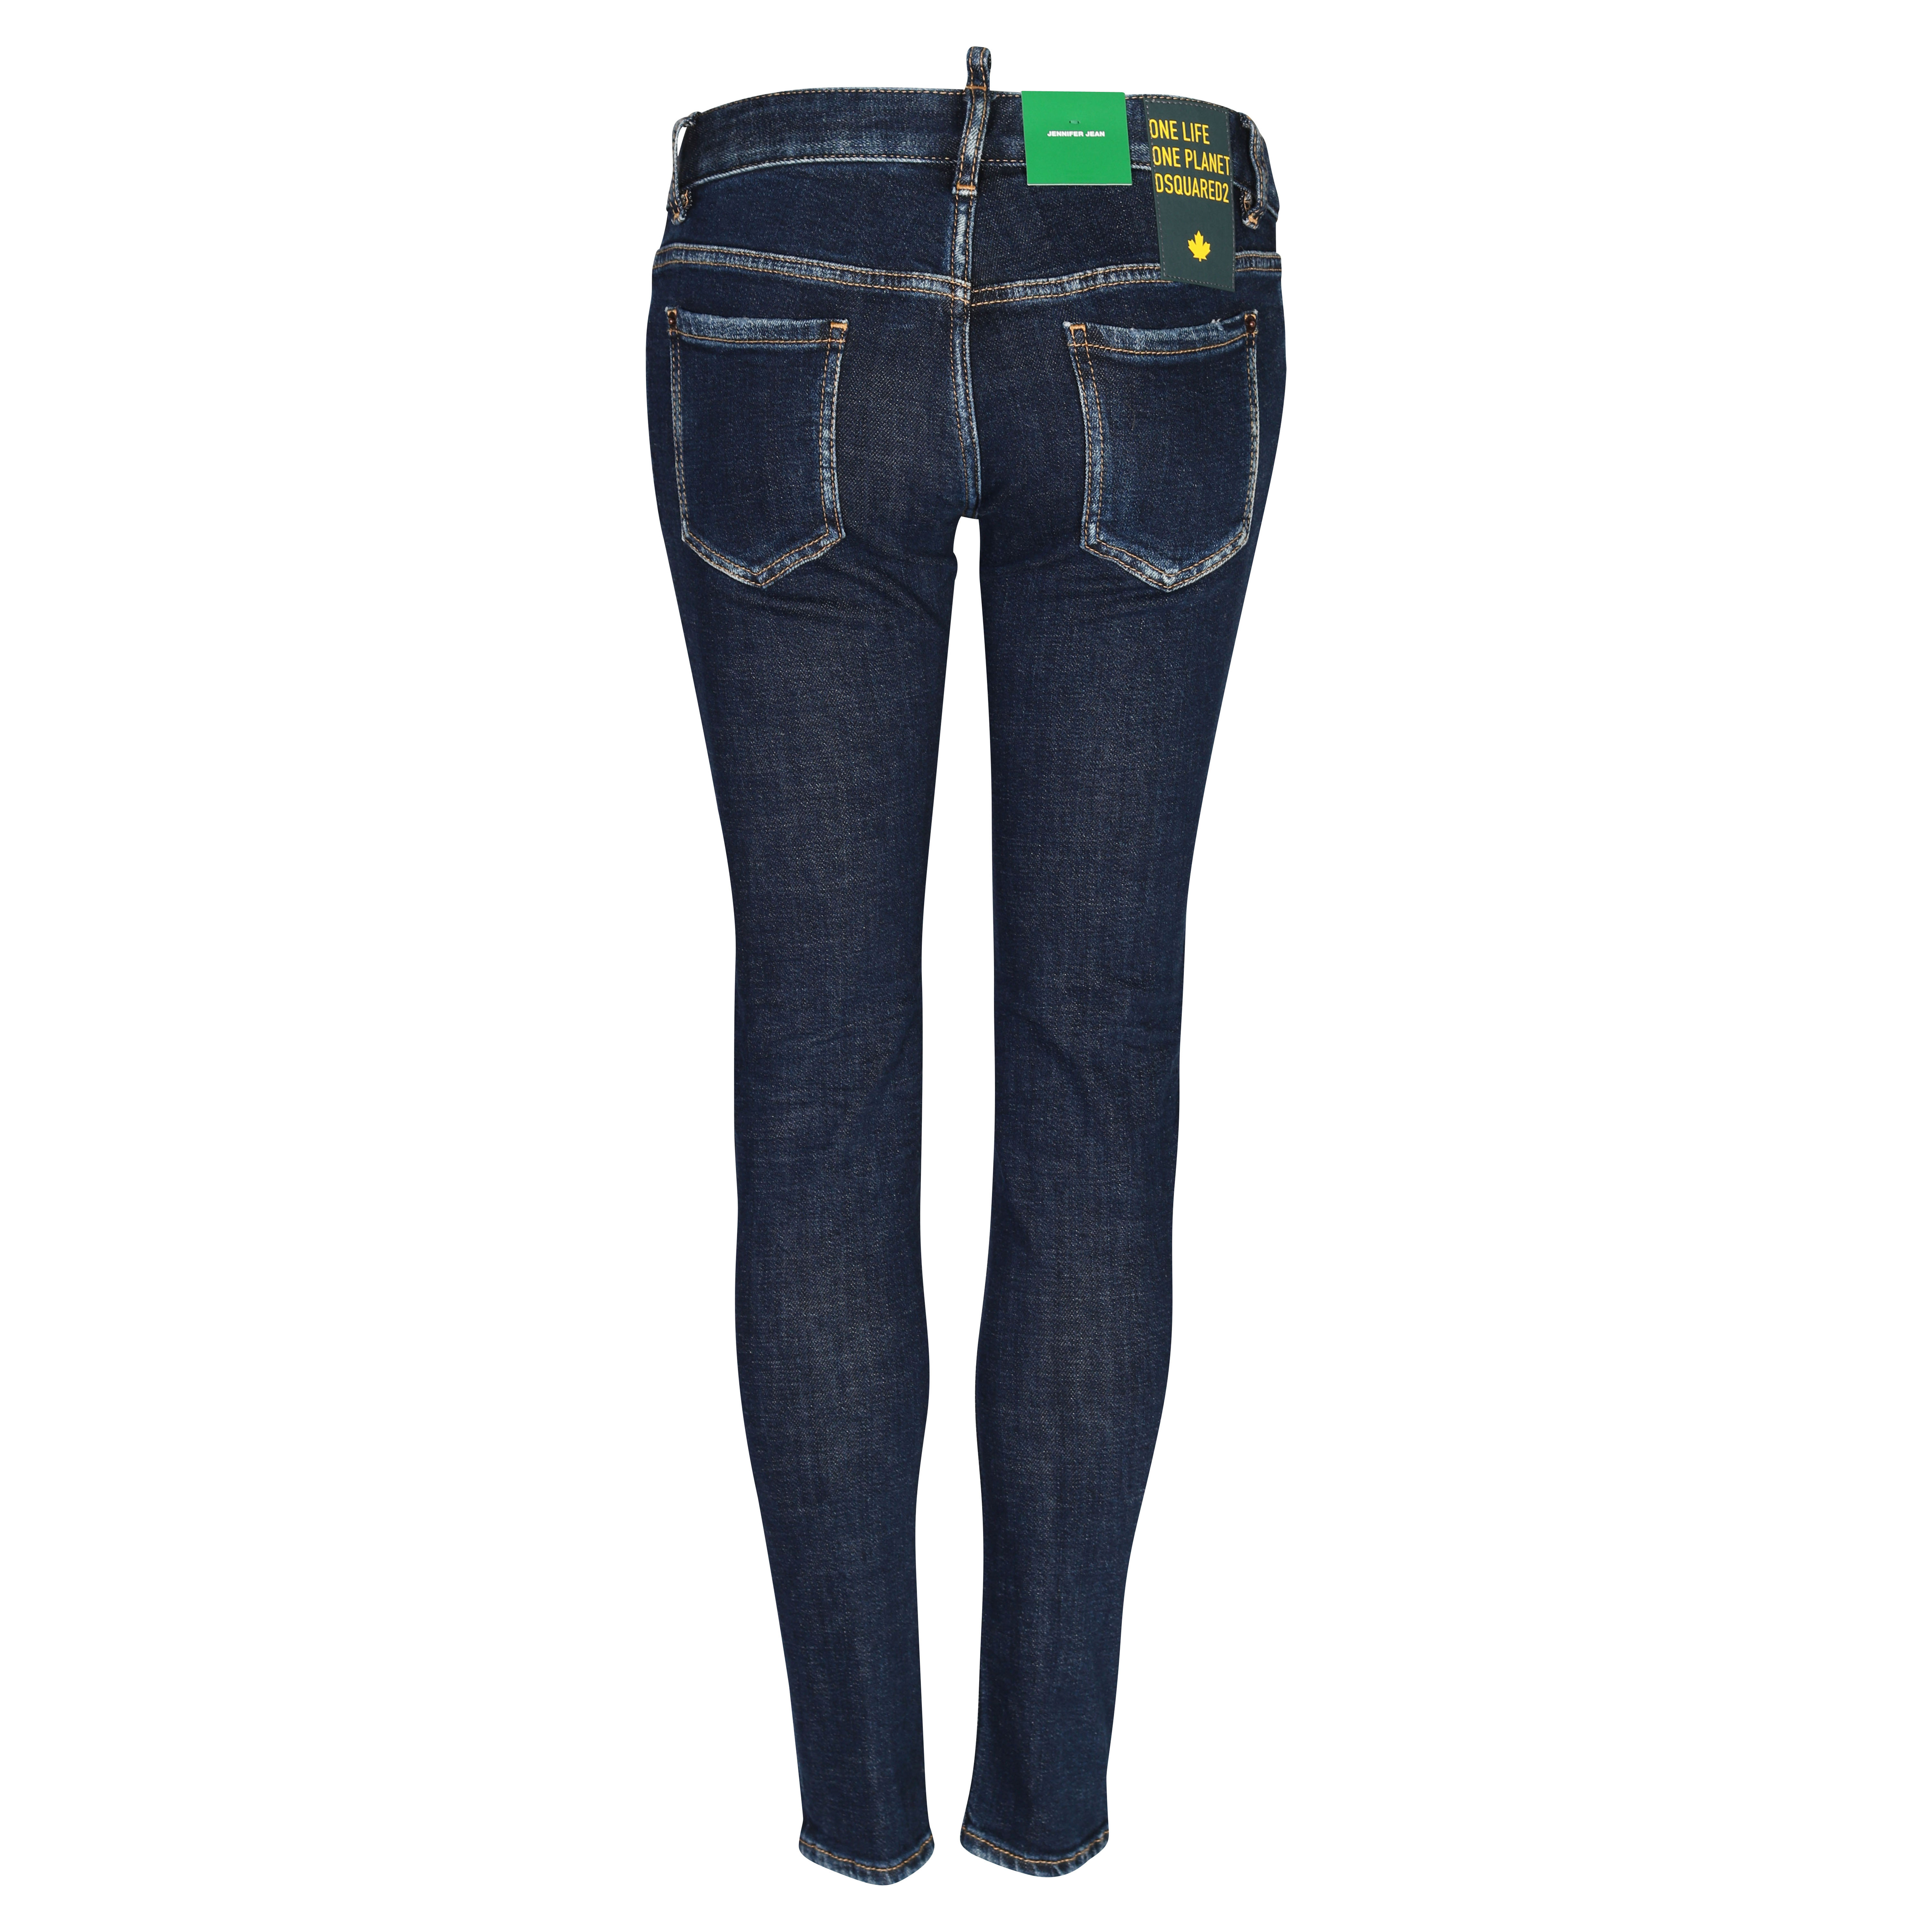 DSQUARED2 Green Label Jennifer Jeans in Dark Blue IT 36 / DE 30